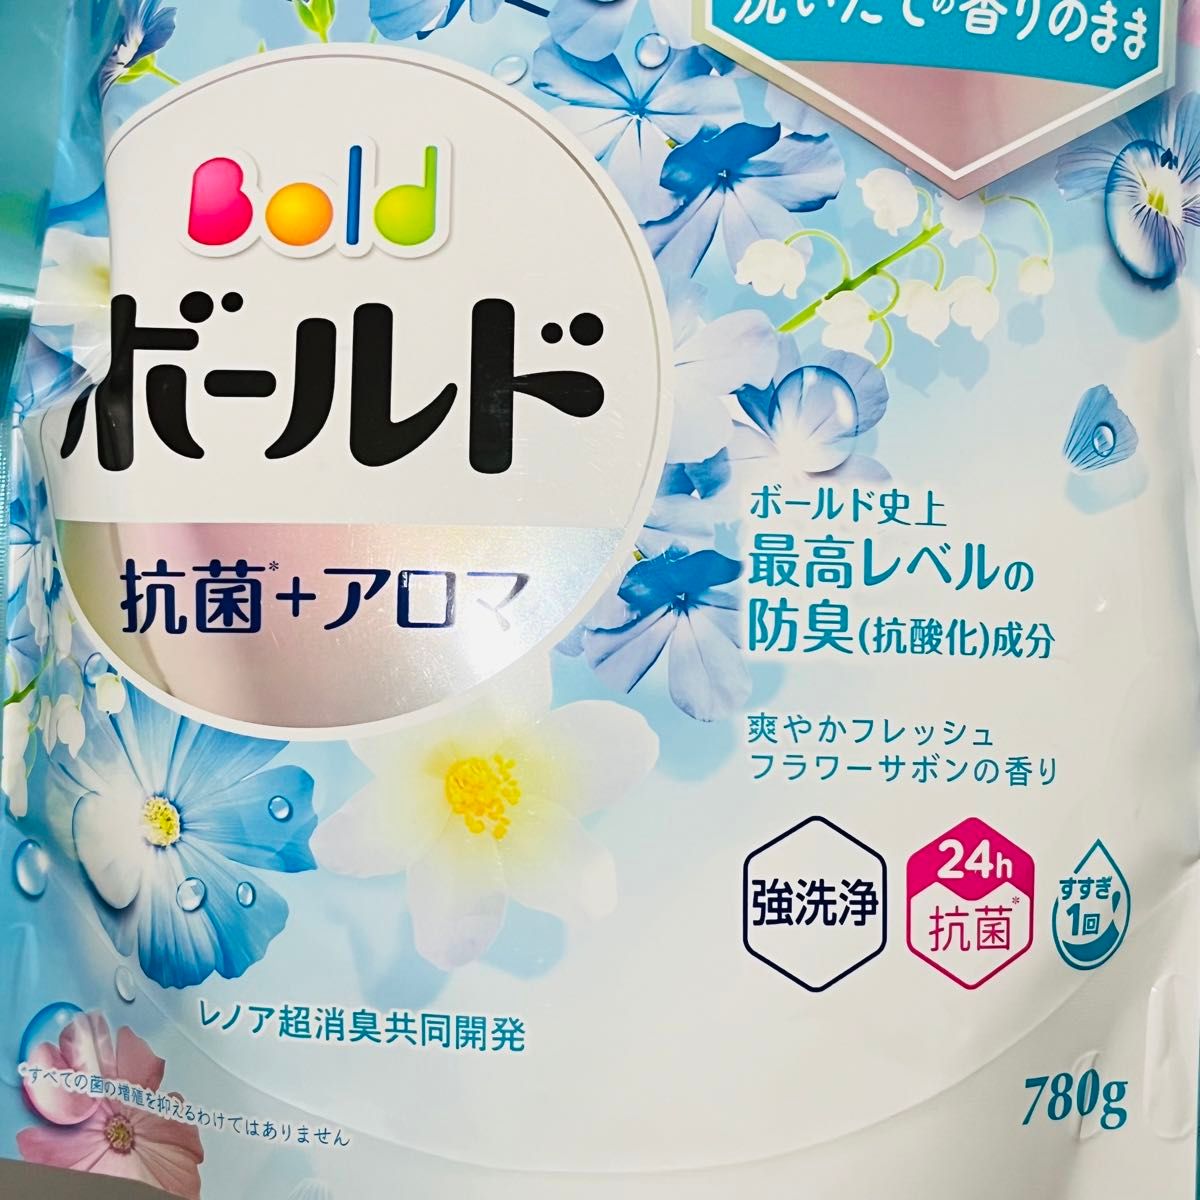 【匿名発送】 新品 P&G ボールド ジェル 洗濯洗剤 フレッシュフラワーサボンの香り 詰め替え 超特大 780g × 2個